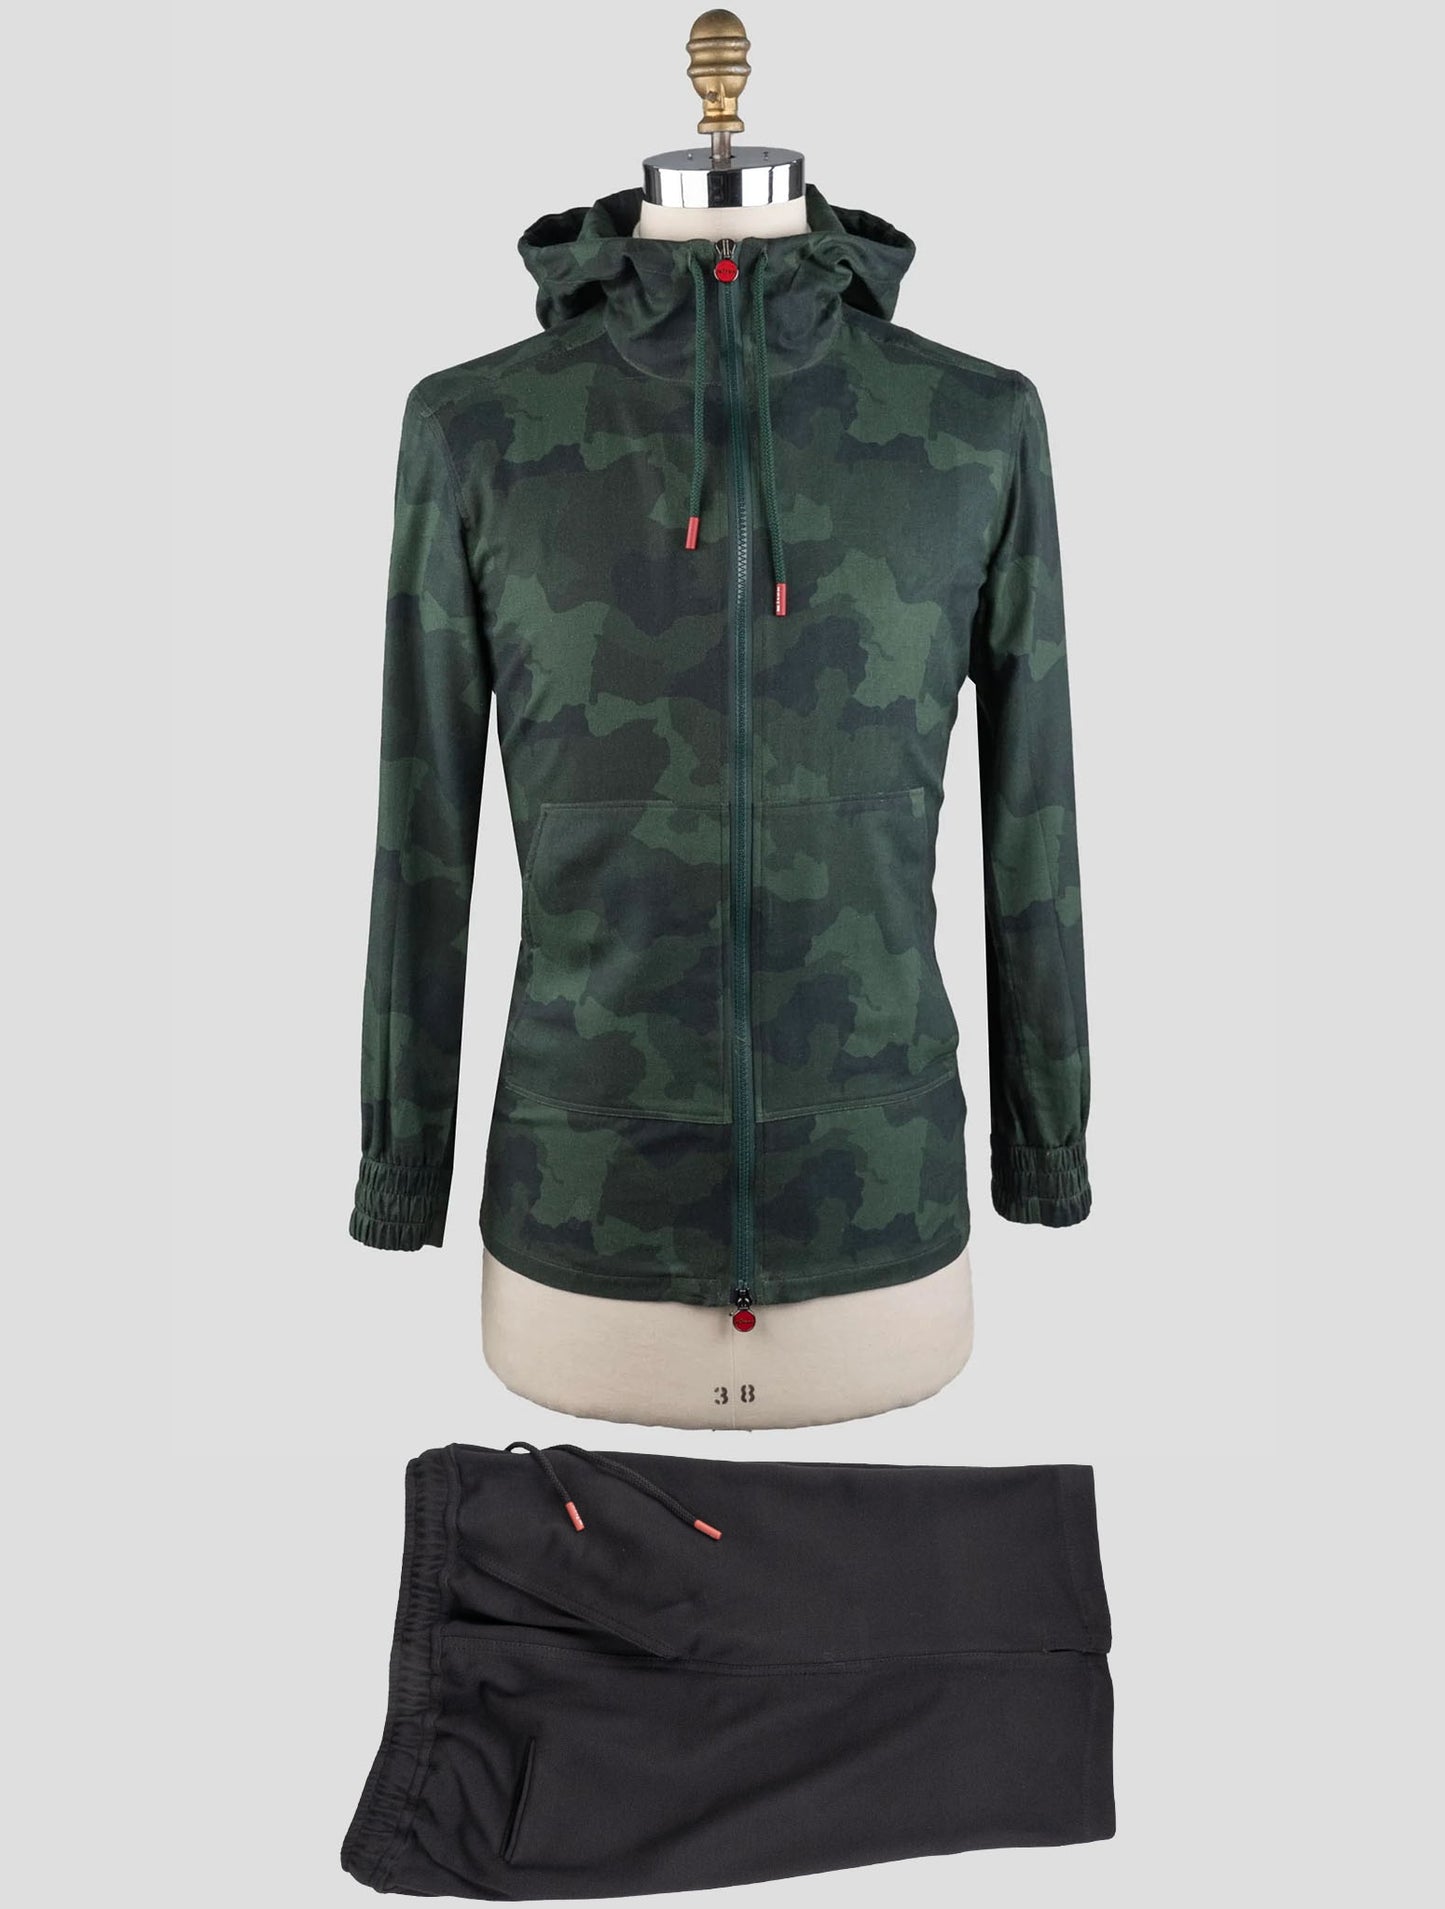 Kiton Matching Outfit - Grøn Umbi og sorte korte bukser træningsdragt